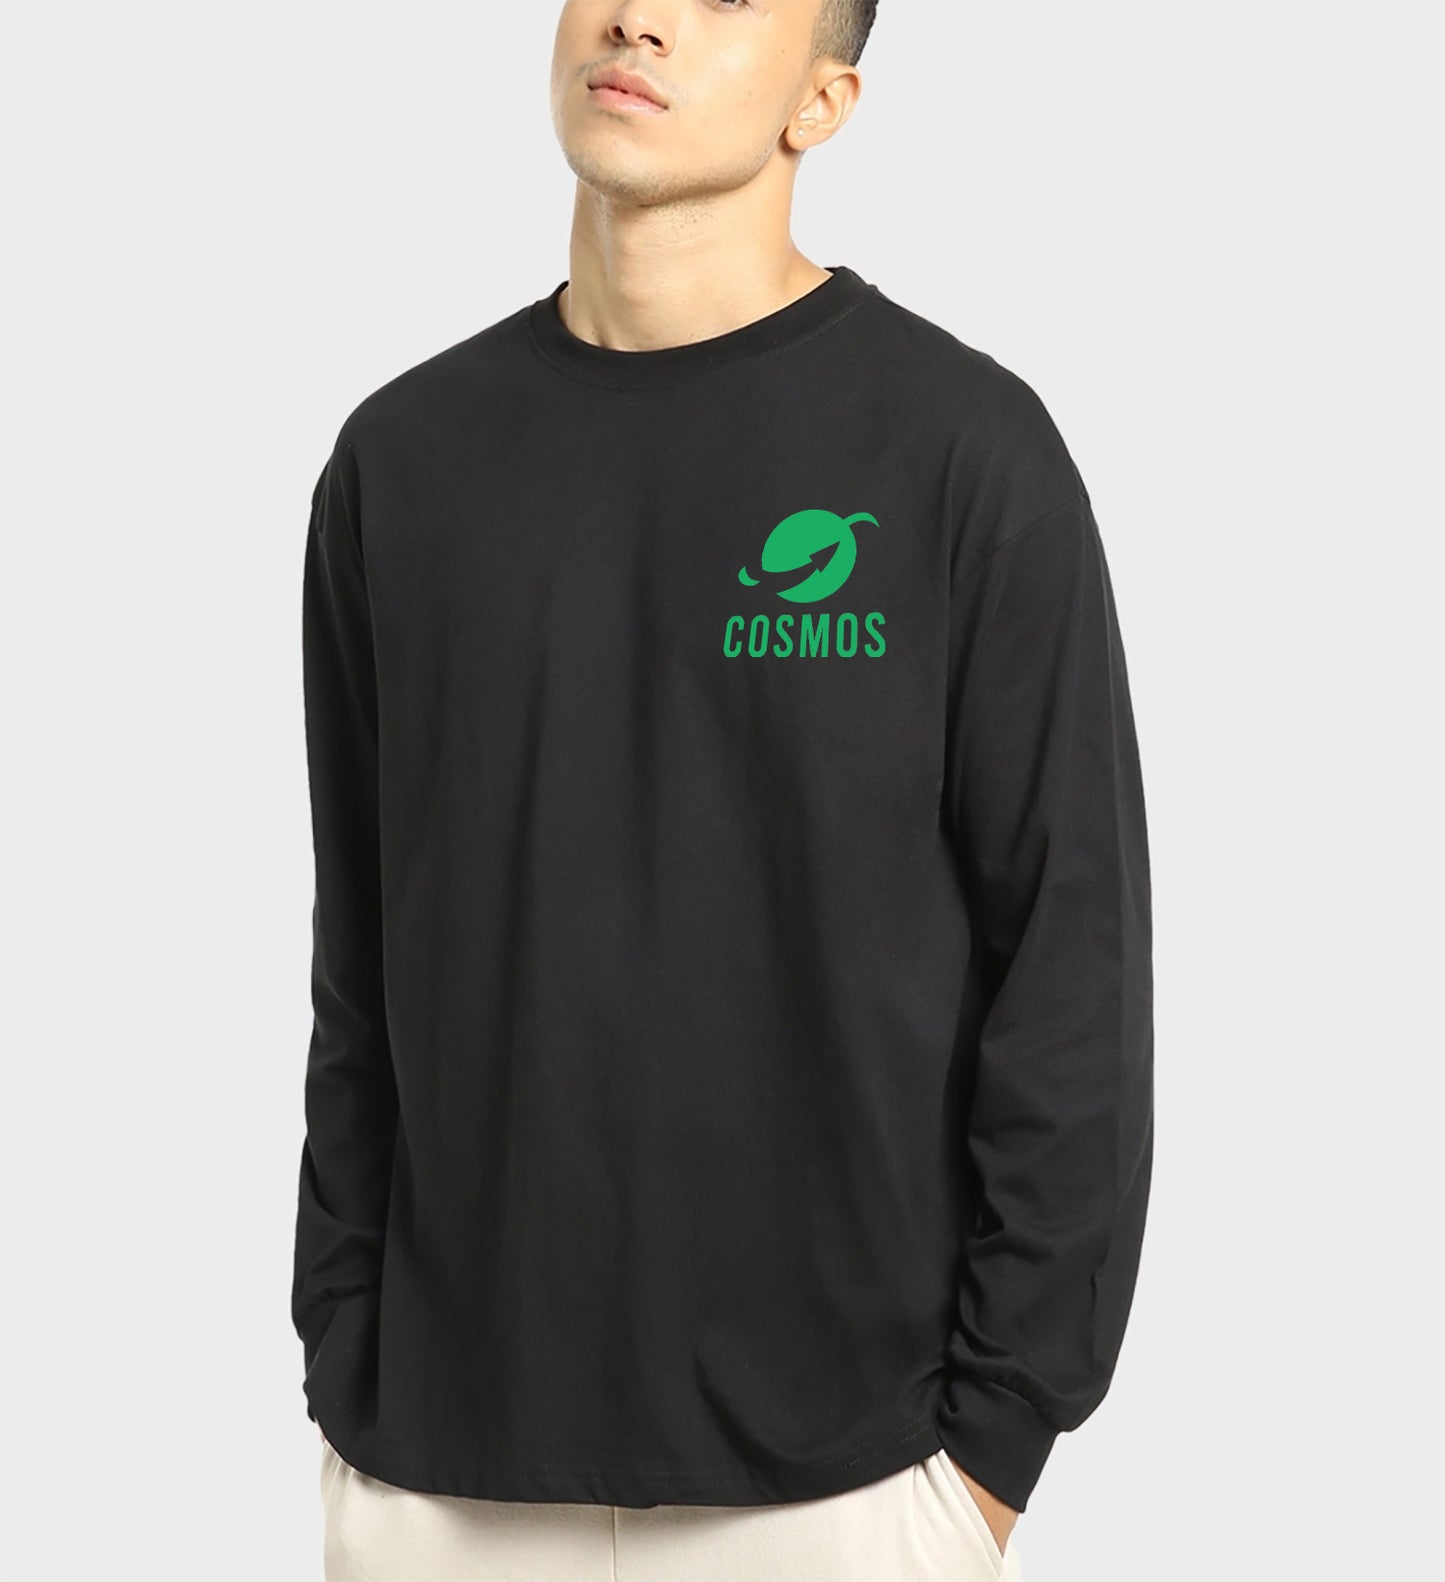 Nextout Space - Oversized Tshirt